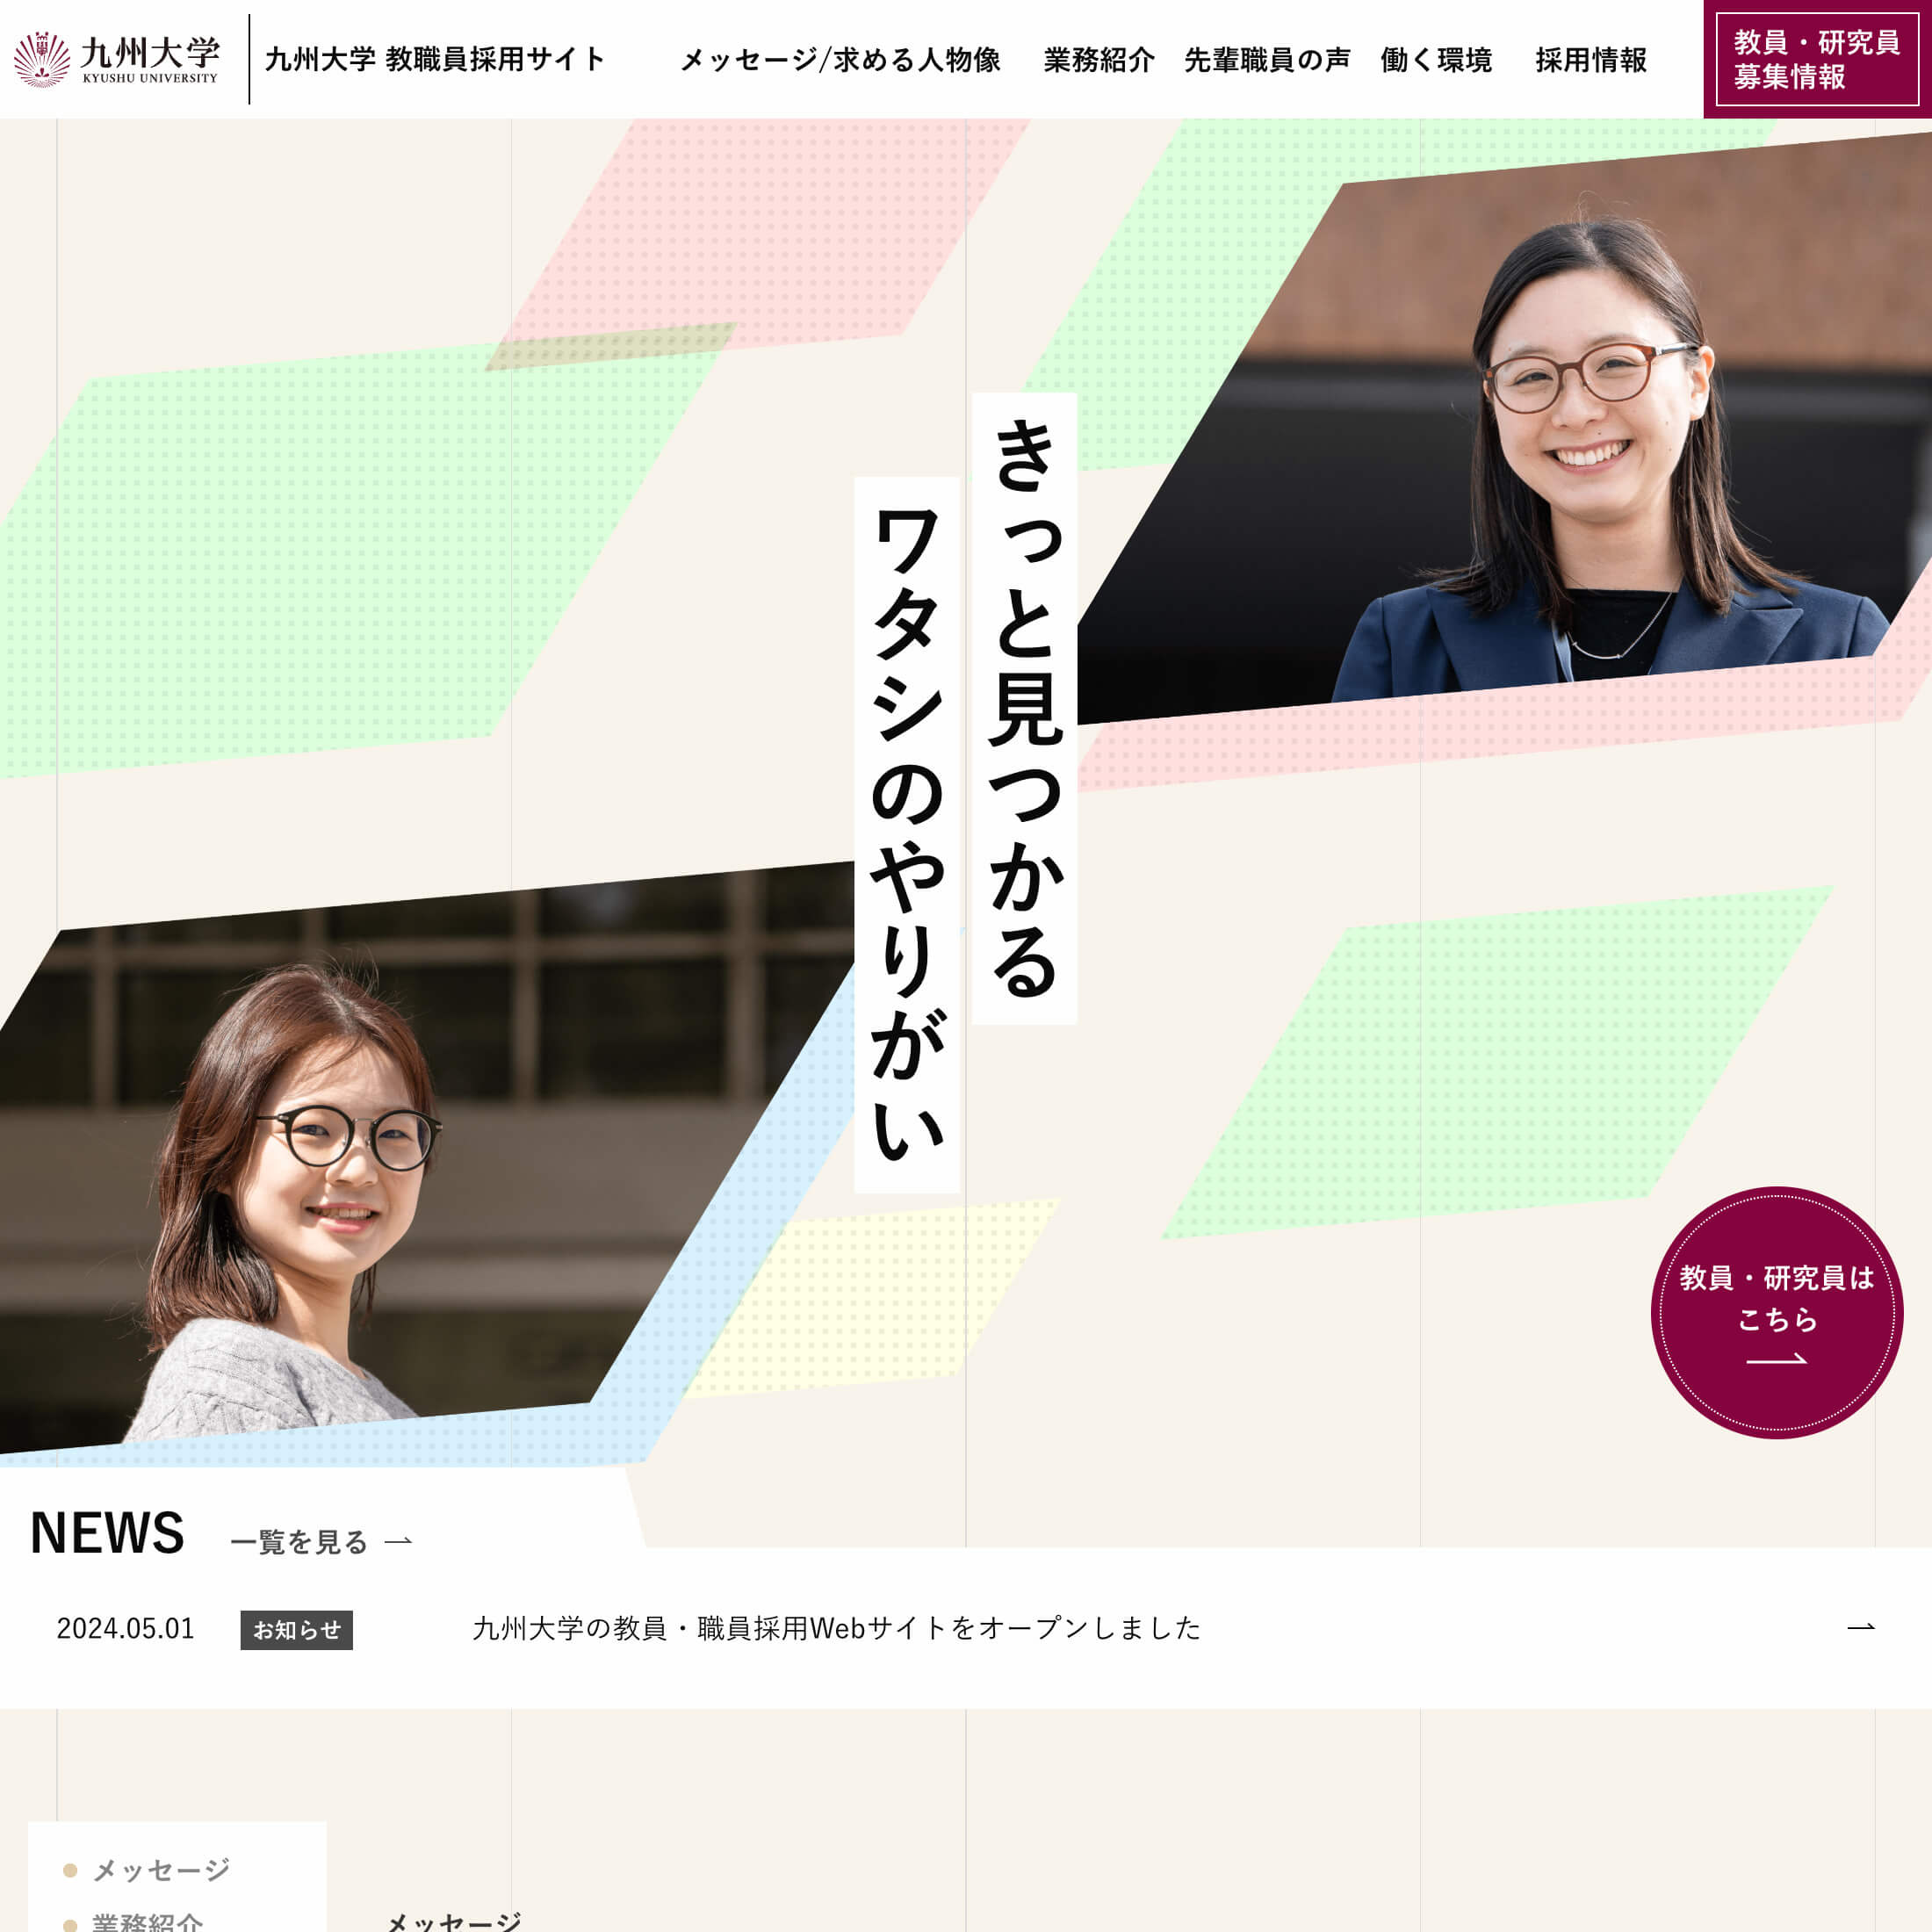 九州大学 教職員採用サイト